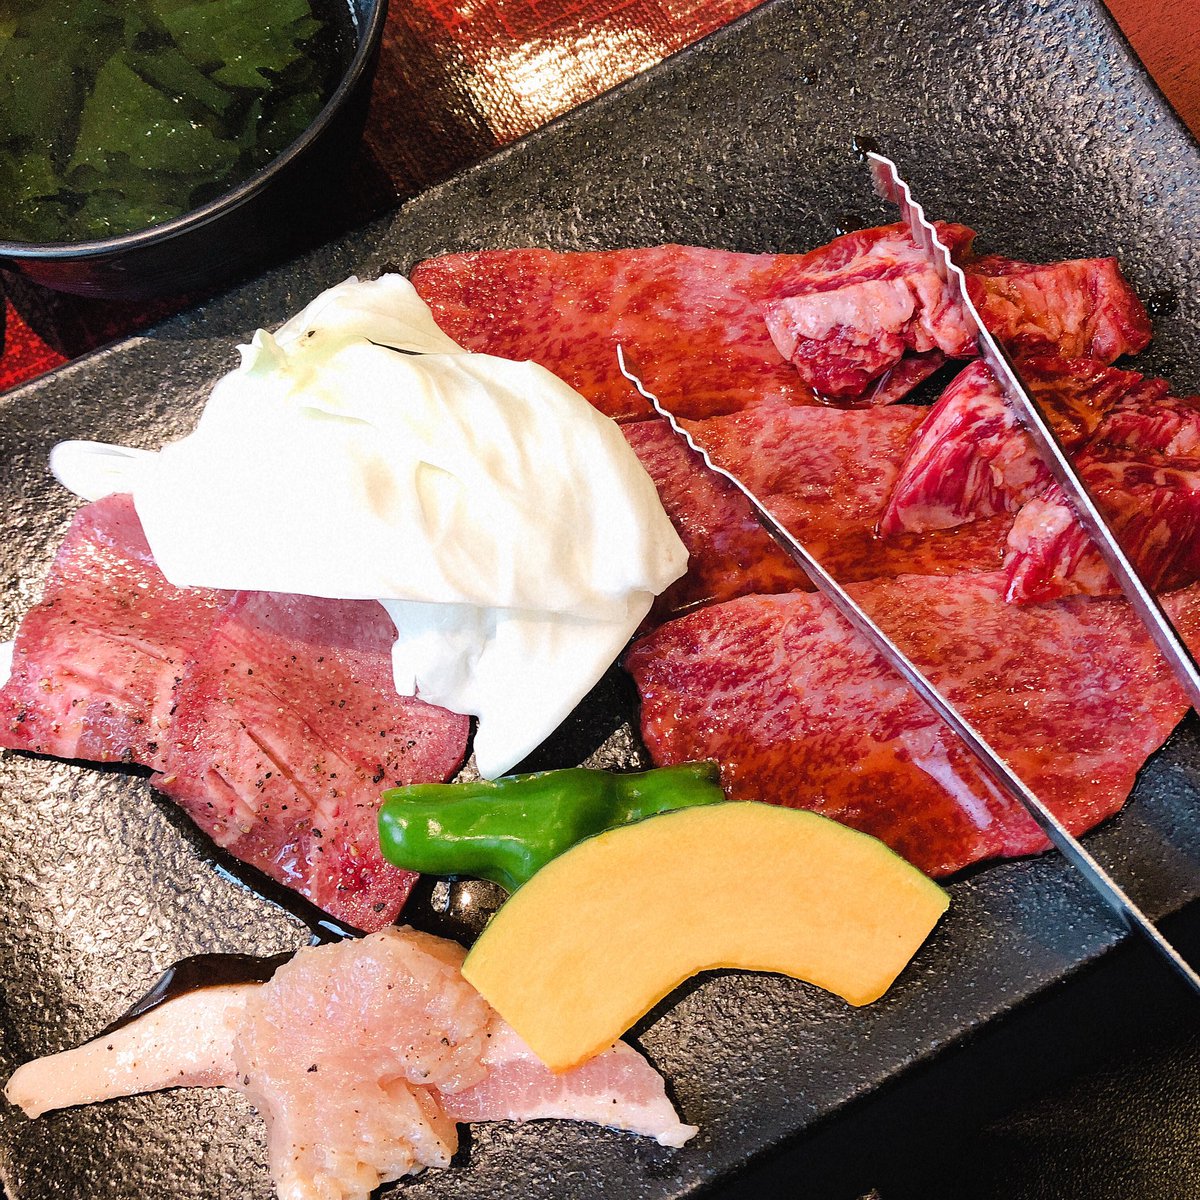 Fukuoka Bocco ふくおかぼっこ 福岡大名に梨花苑という老舗焼肉屋があります 焼肉ランチはお肉と石焼きビビンバなどがセットになっているので満足度が高い ディナーだとちょっとお高めですが ランチだったら安く食べられる 焼肉ランチしたいなら